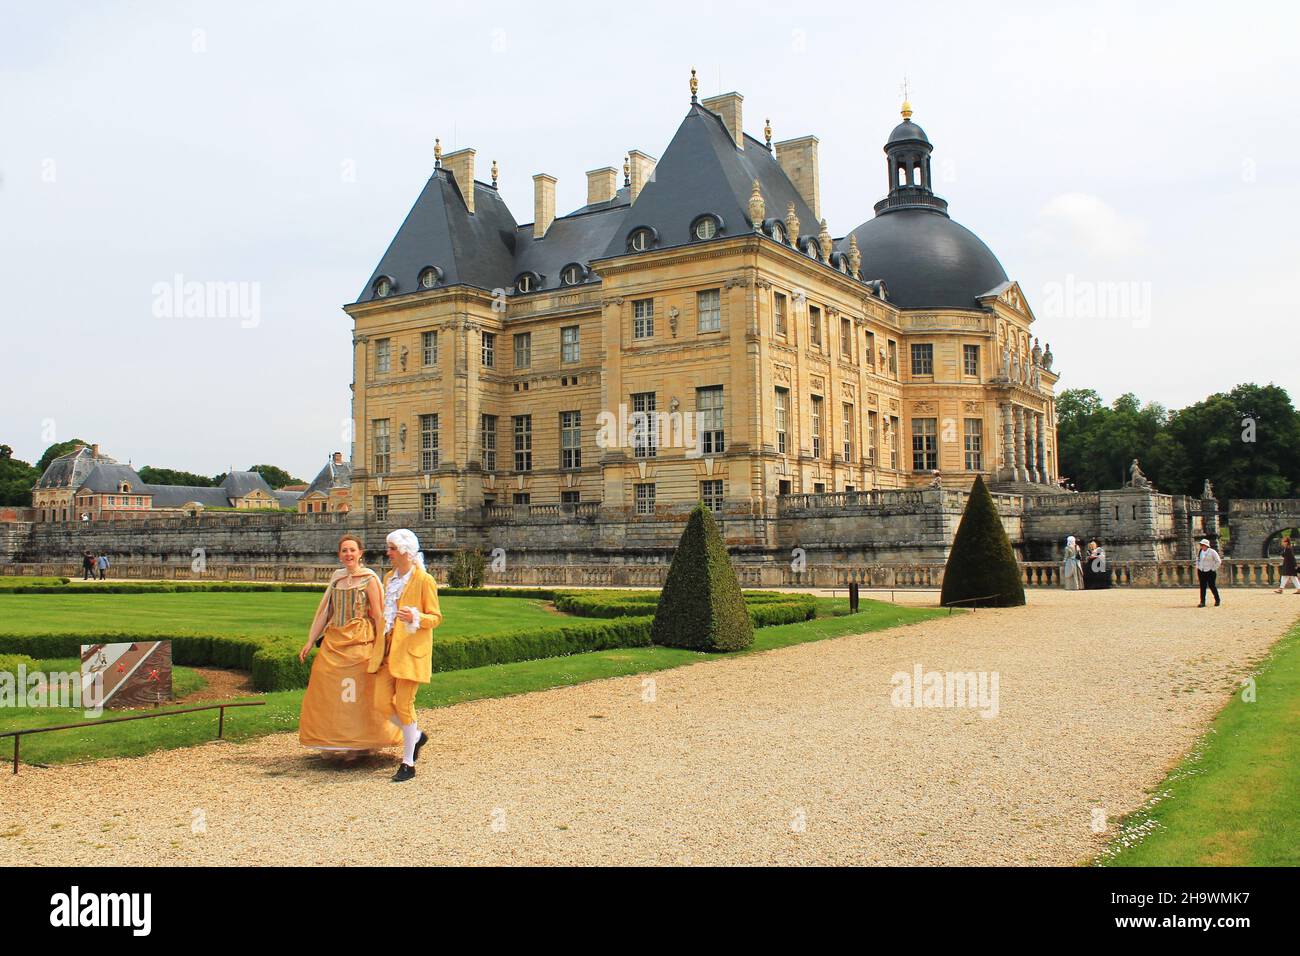 Des visiteurs costumés se promènent sur le terrain du château Vaux le Vicomte lors de la journée annuelle du Grand siècle célébrant l'époque baroque historique. Banque D'Images